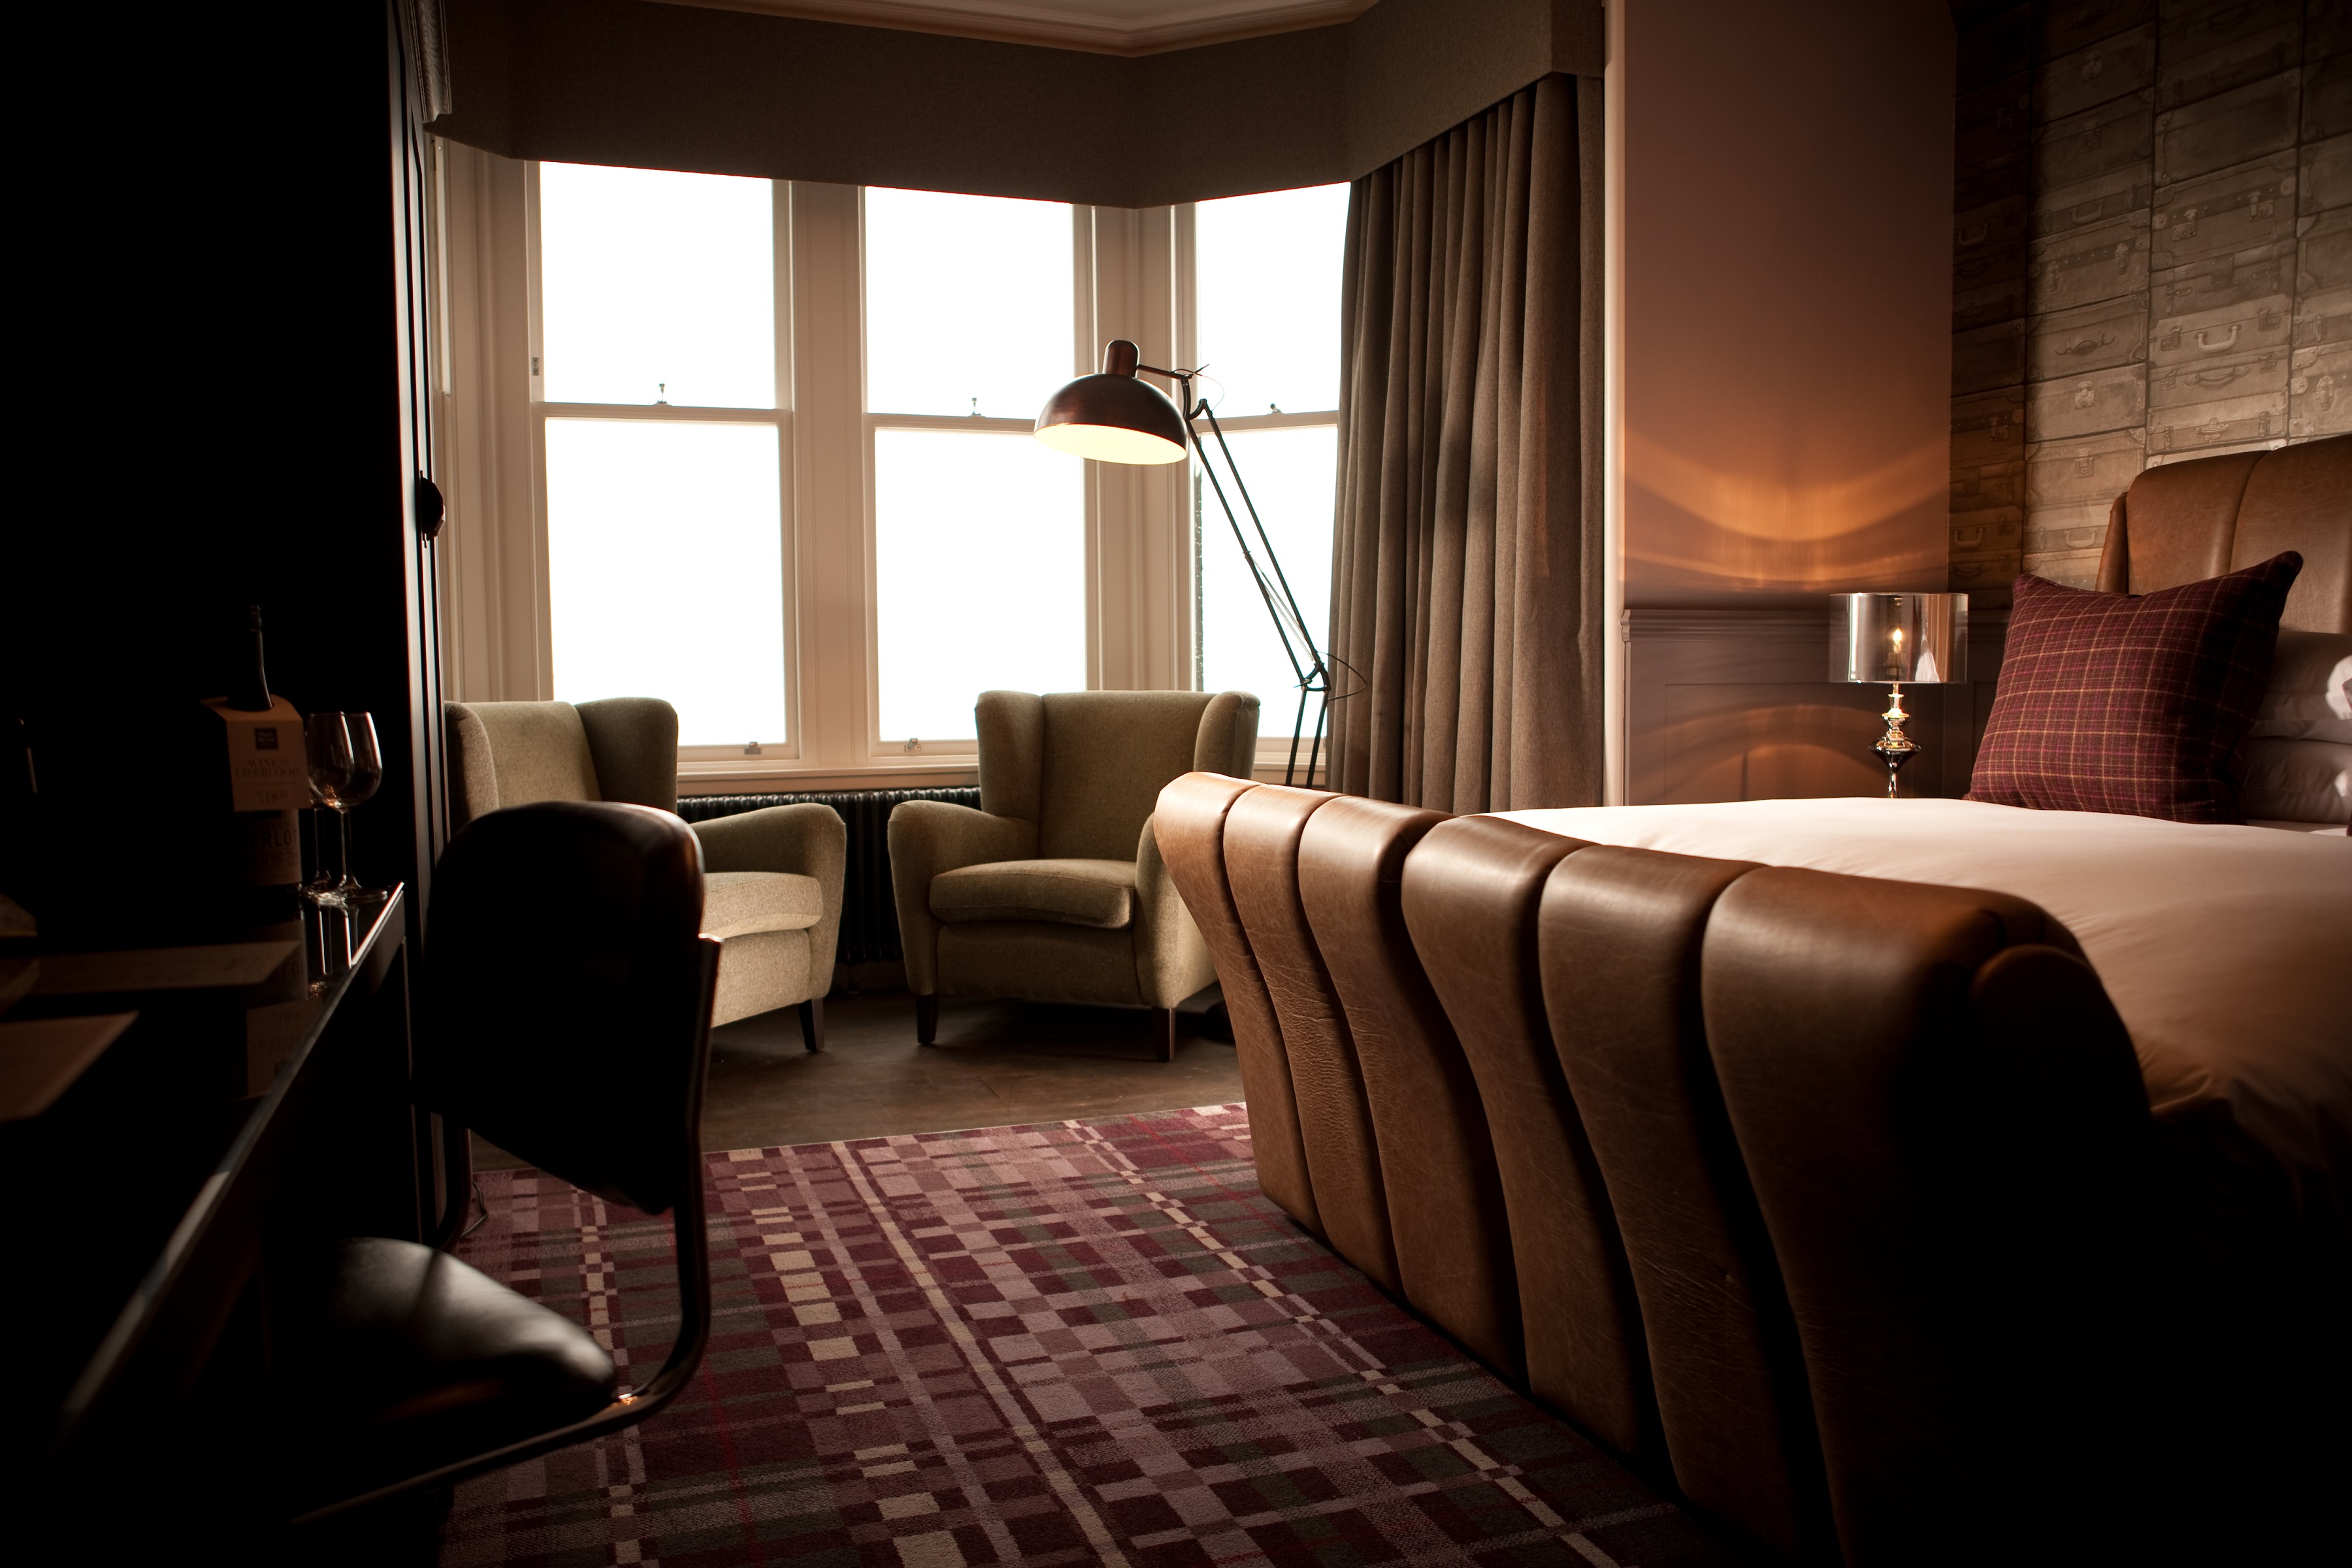 Superior guest room at Hotel du Vin St Andrews